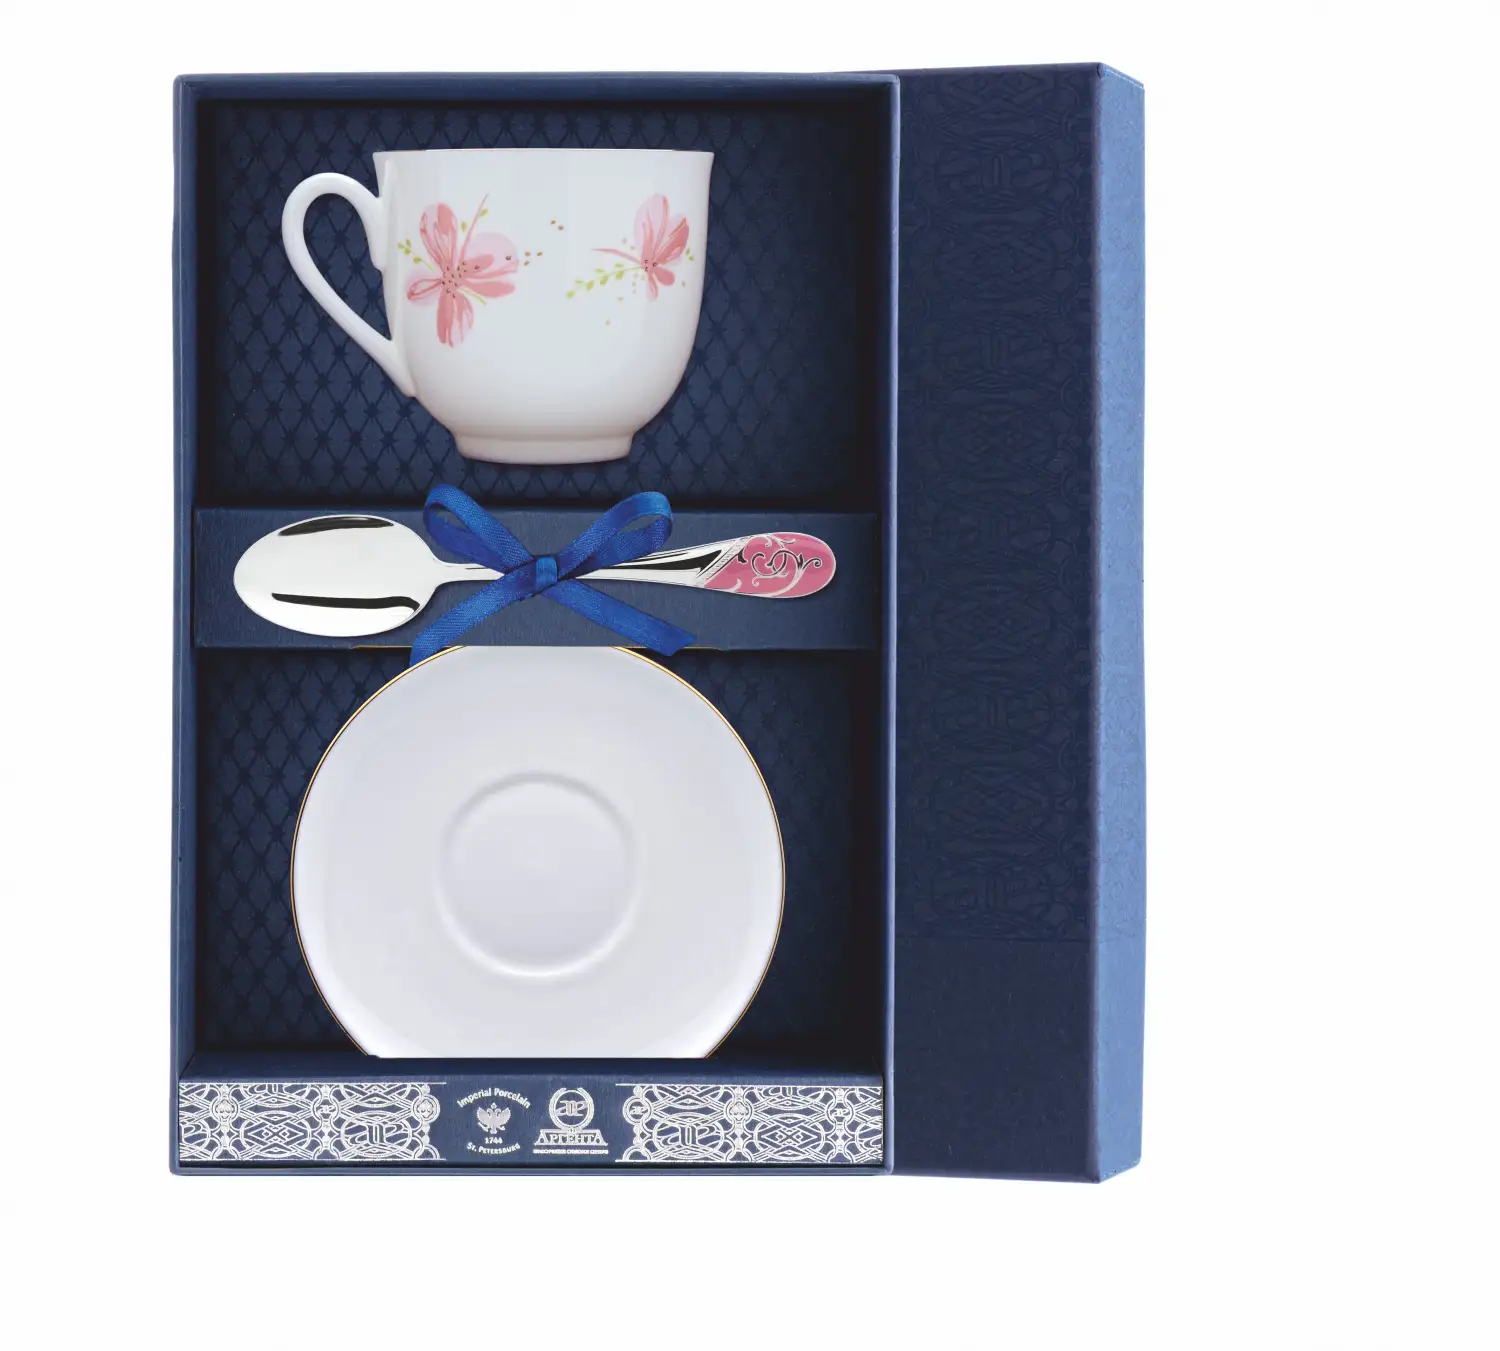 Набор чайный Ландыш - Розовые цветы: ложка, рамка для фото, чашка (Серебро 925) набор детский ландыш фигурное катание ложка рамка для фото чашка серебро 925